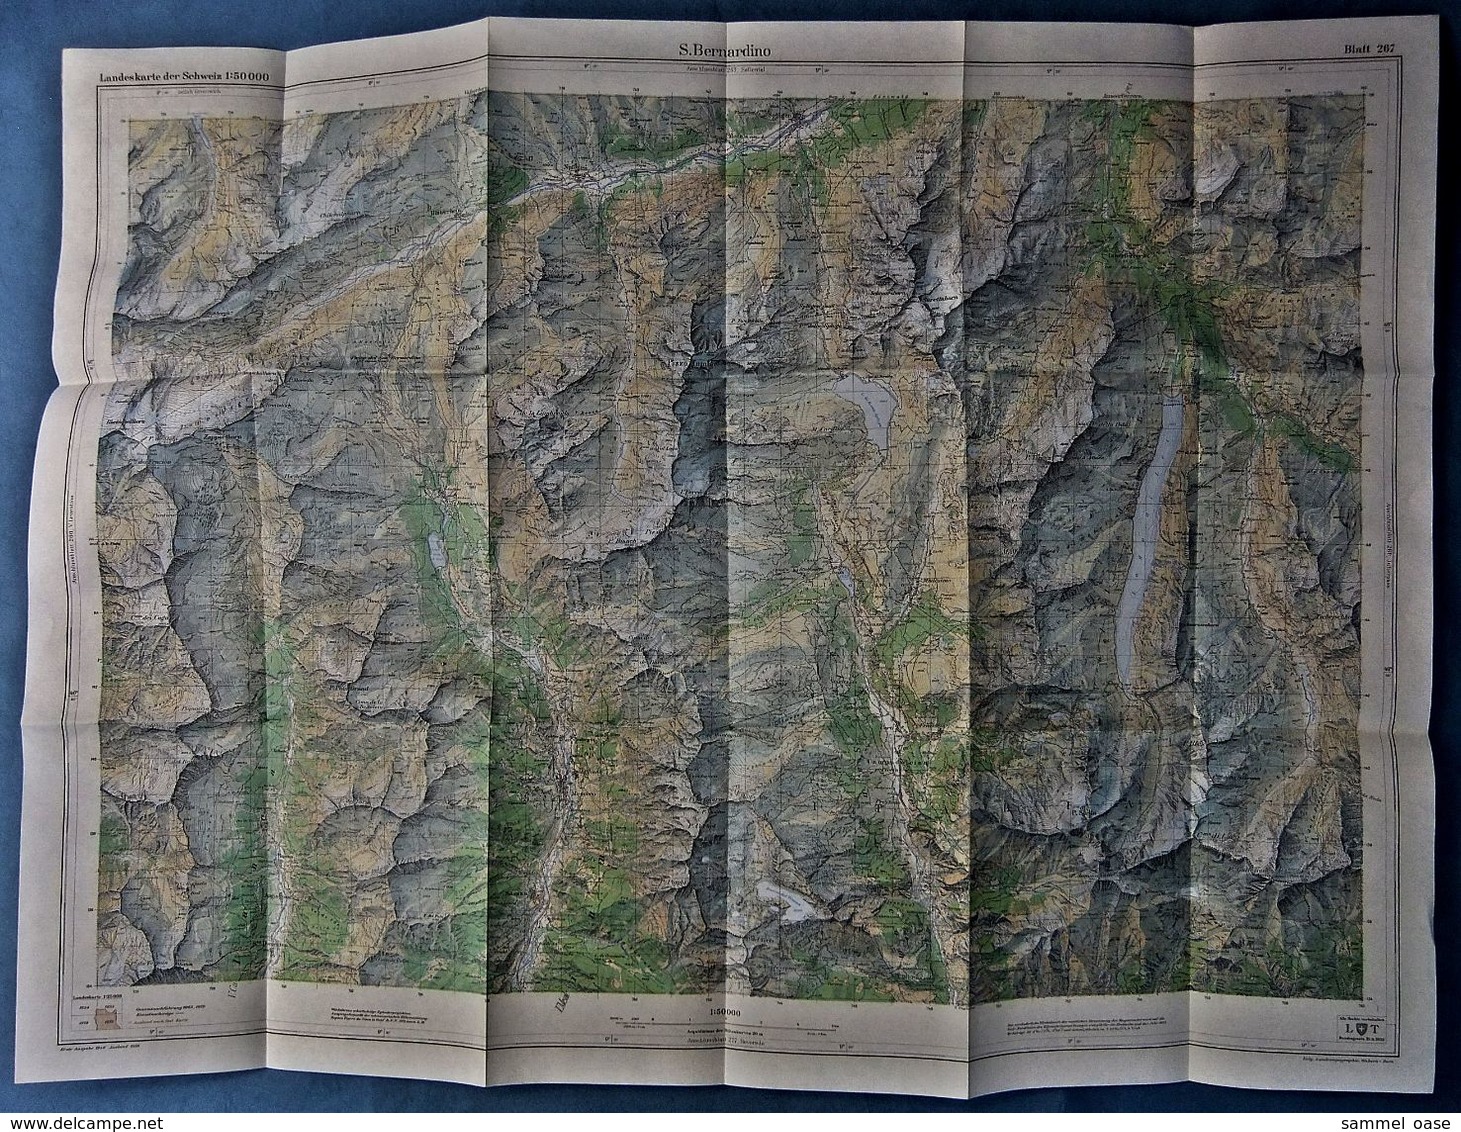 Topographische Karte / Landeskarte Schweiz  -  S. Bernardino 267  - 1:50 000  -  1970 - Mapamundis